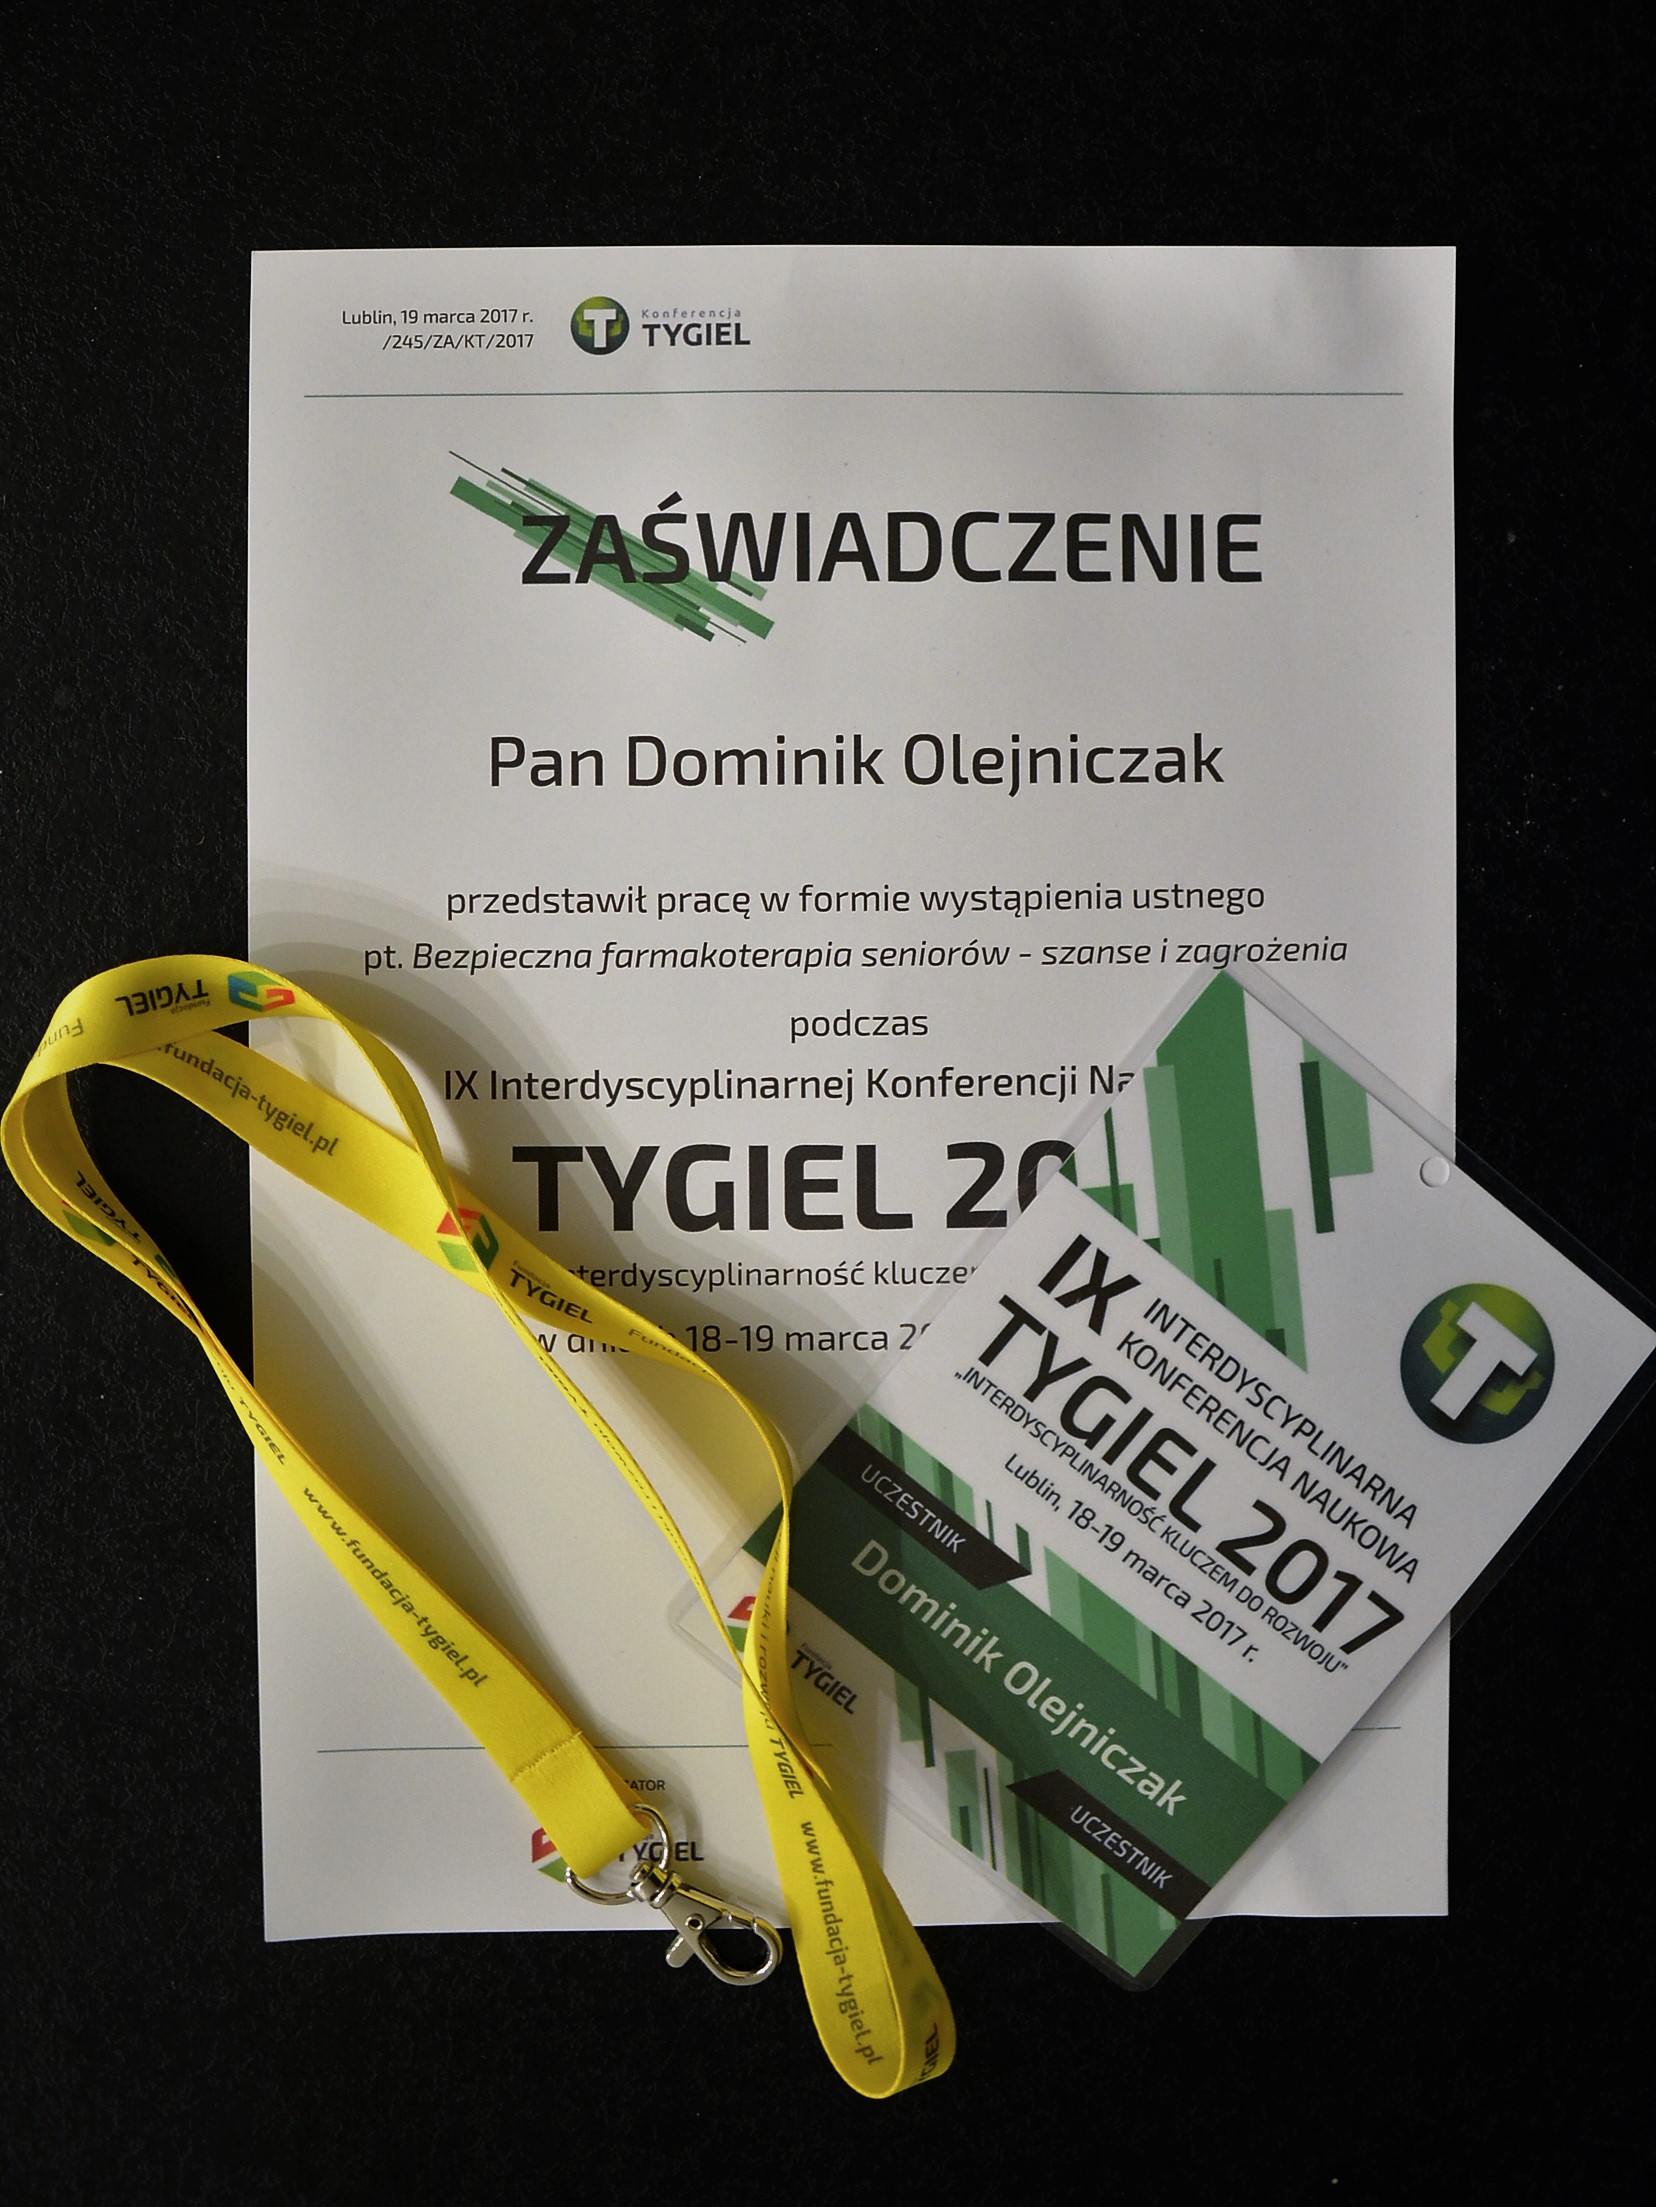 TYGIEL 2017 w Lublinie